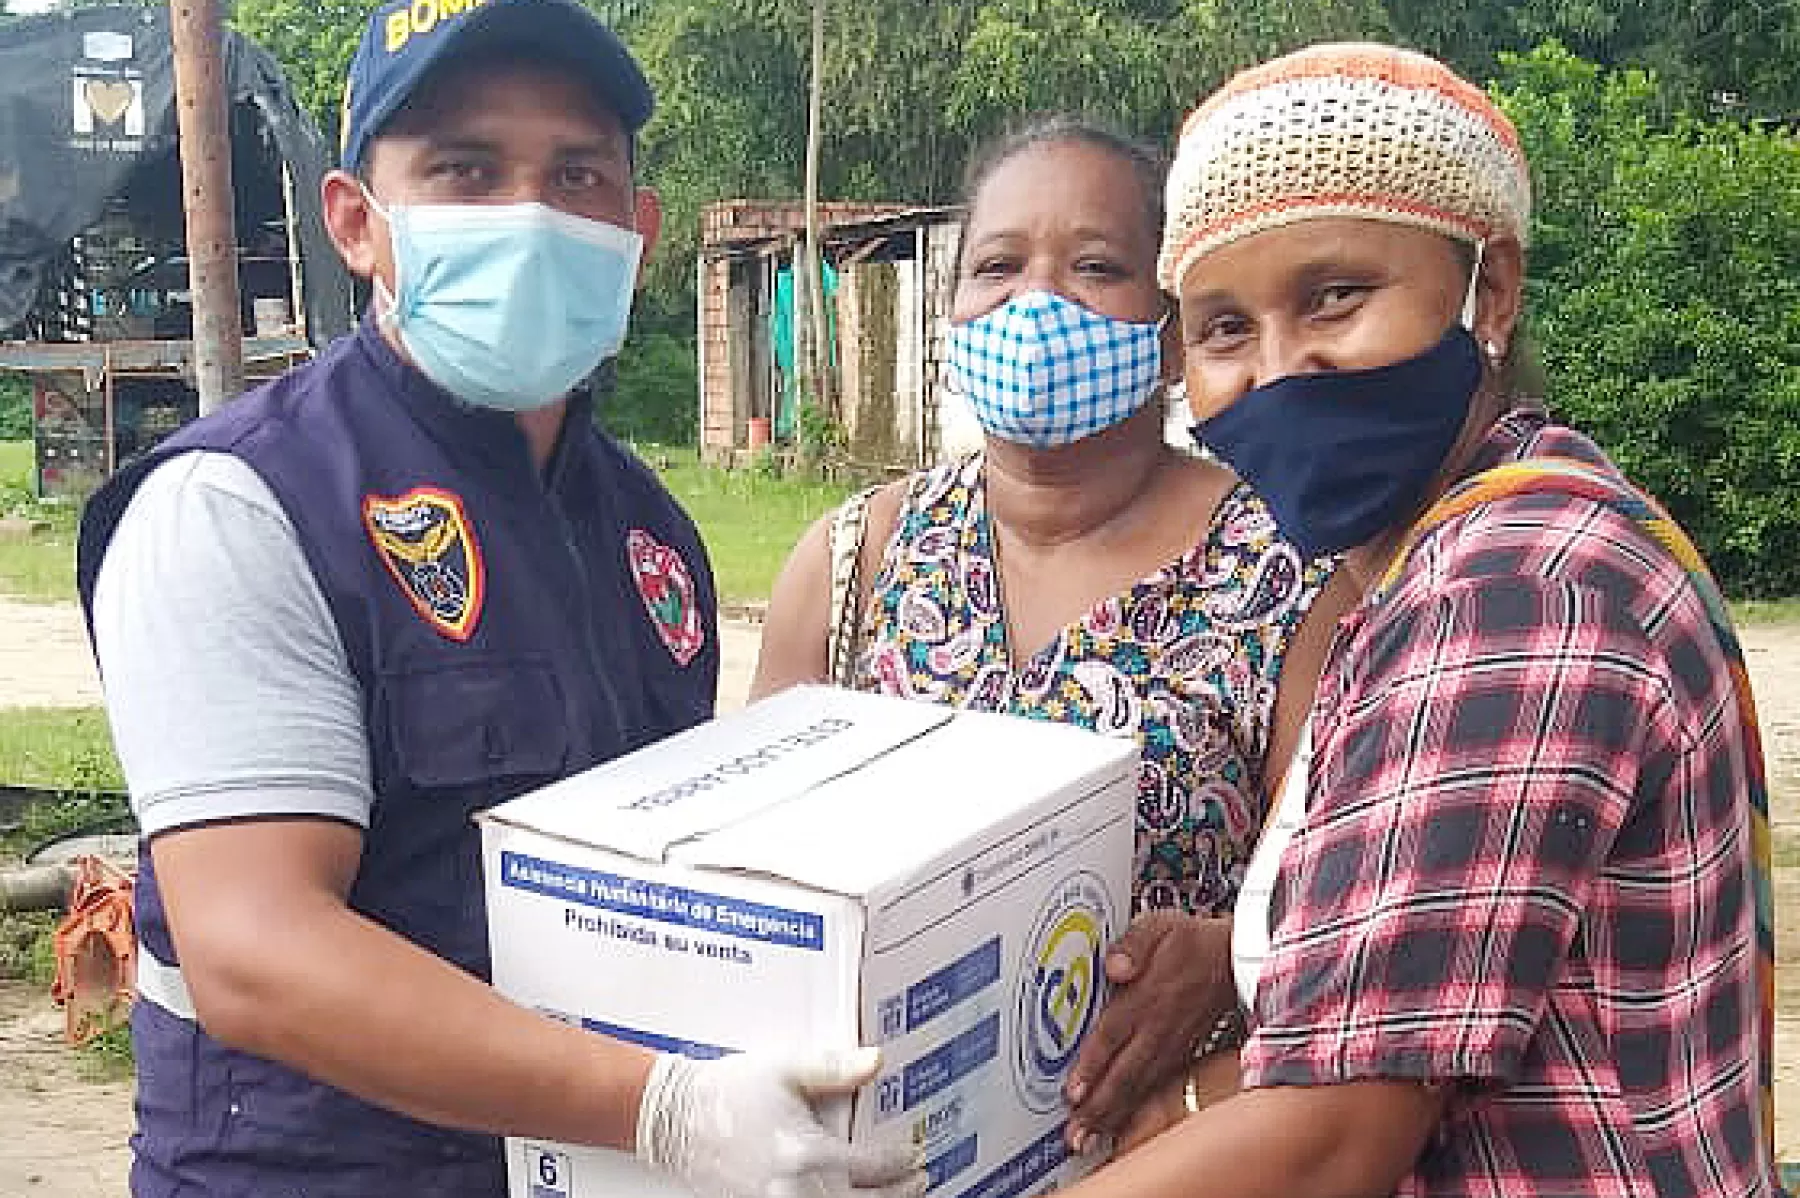 Mujeres afro recibieron ayuda humanitaria por emergencia de la pandemia en Arauca.